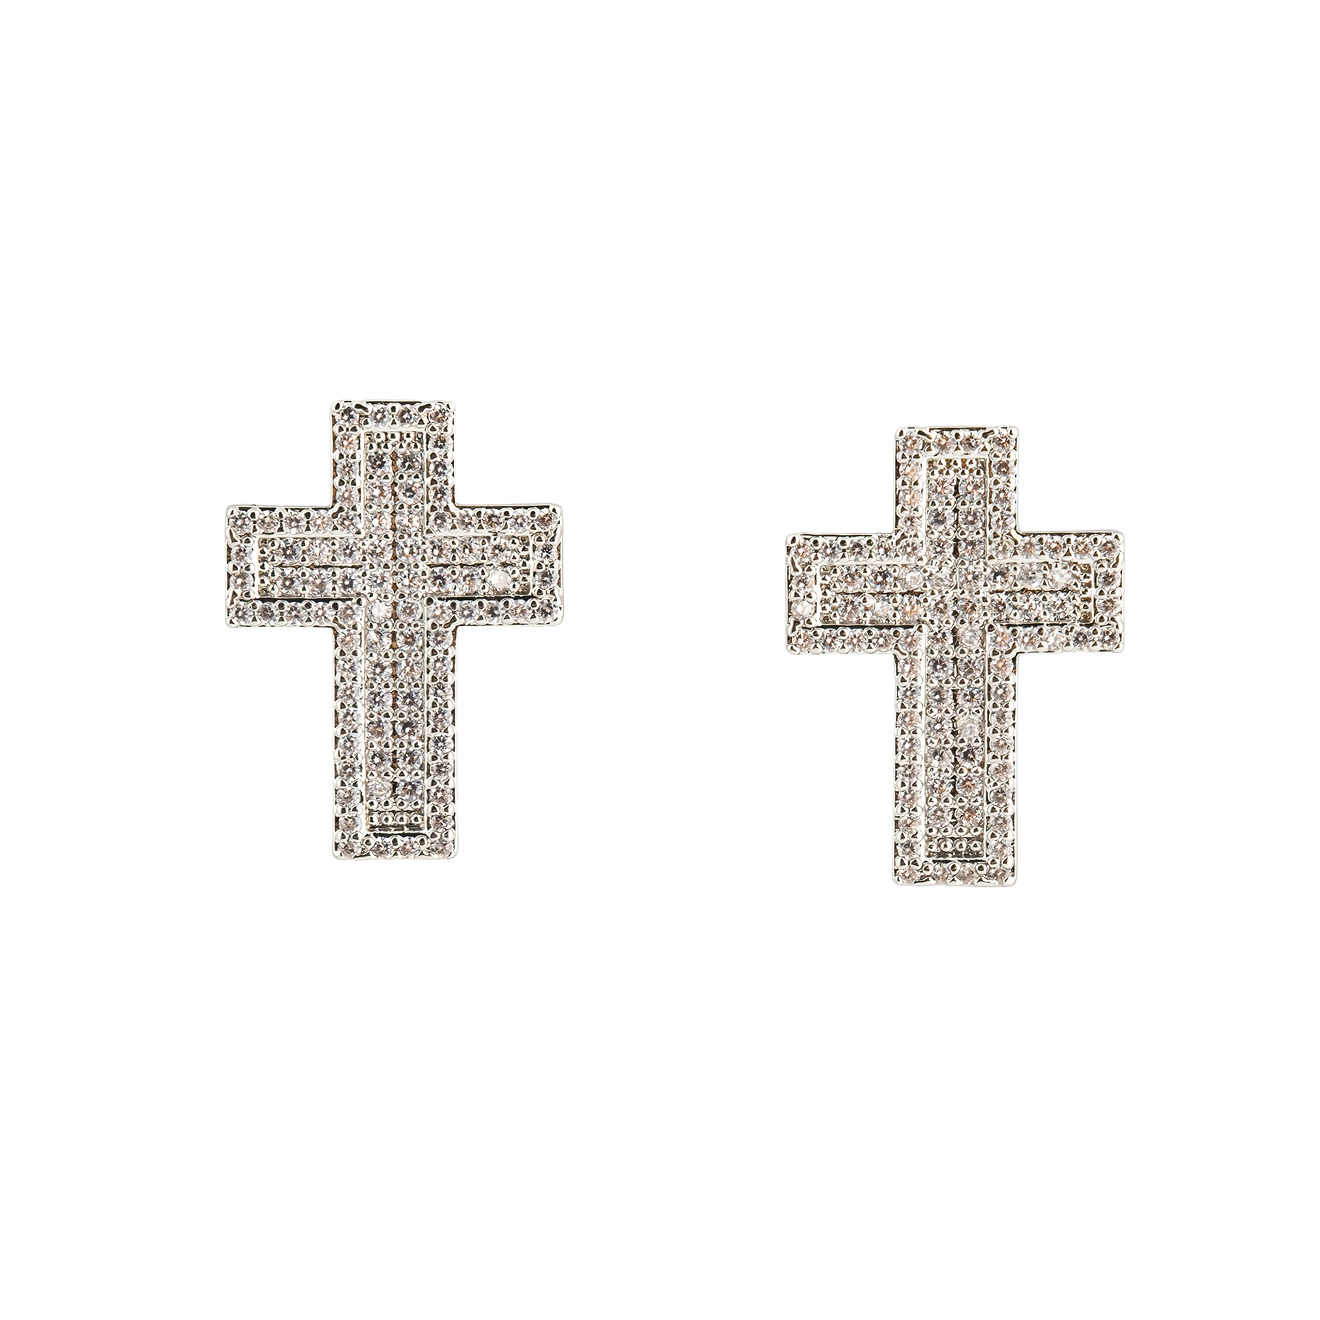 herald percy серебристые серьги кресты с кристаллами Herald Percy Серебристые серьги-кресты с кристалами